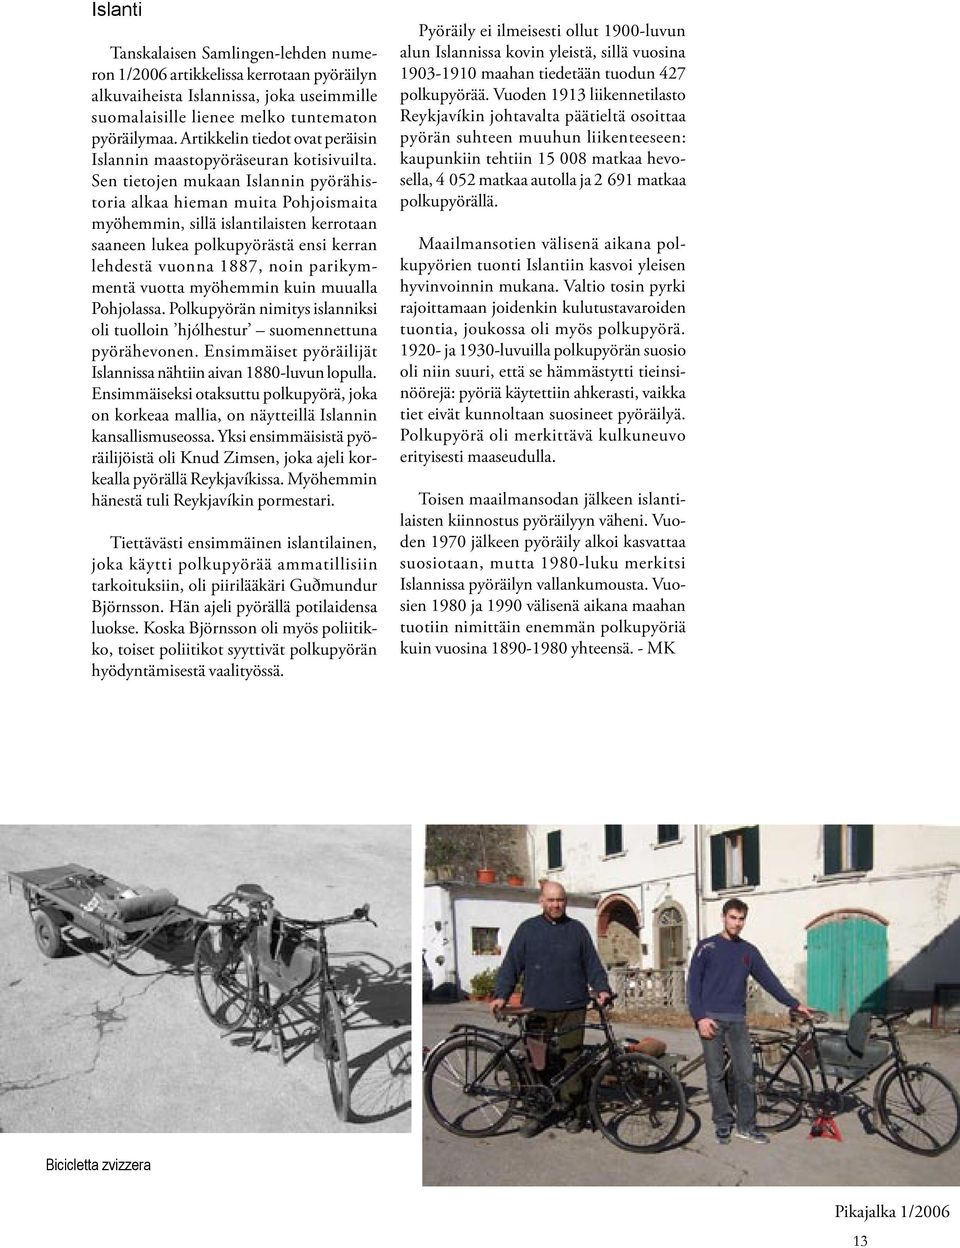 Sen tietojen mukaan Islannin pyörähistoria alkaa hieman muita Pohjoismaita myöhemmin, sillä islantilaisten kerrotaan saaneen lukea polkupyörästä ensi kerran lehdestä vuonna 1887, noin parikymmentä